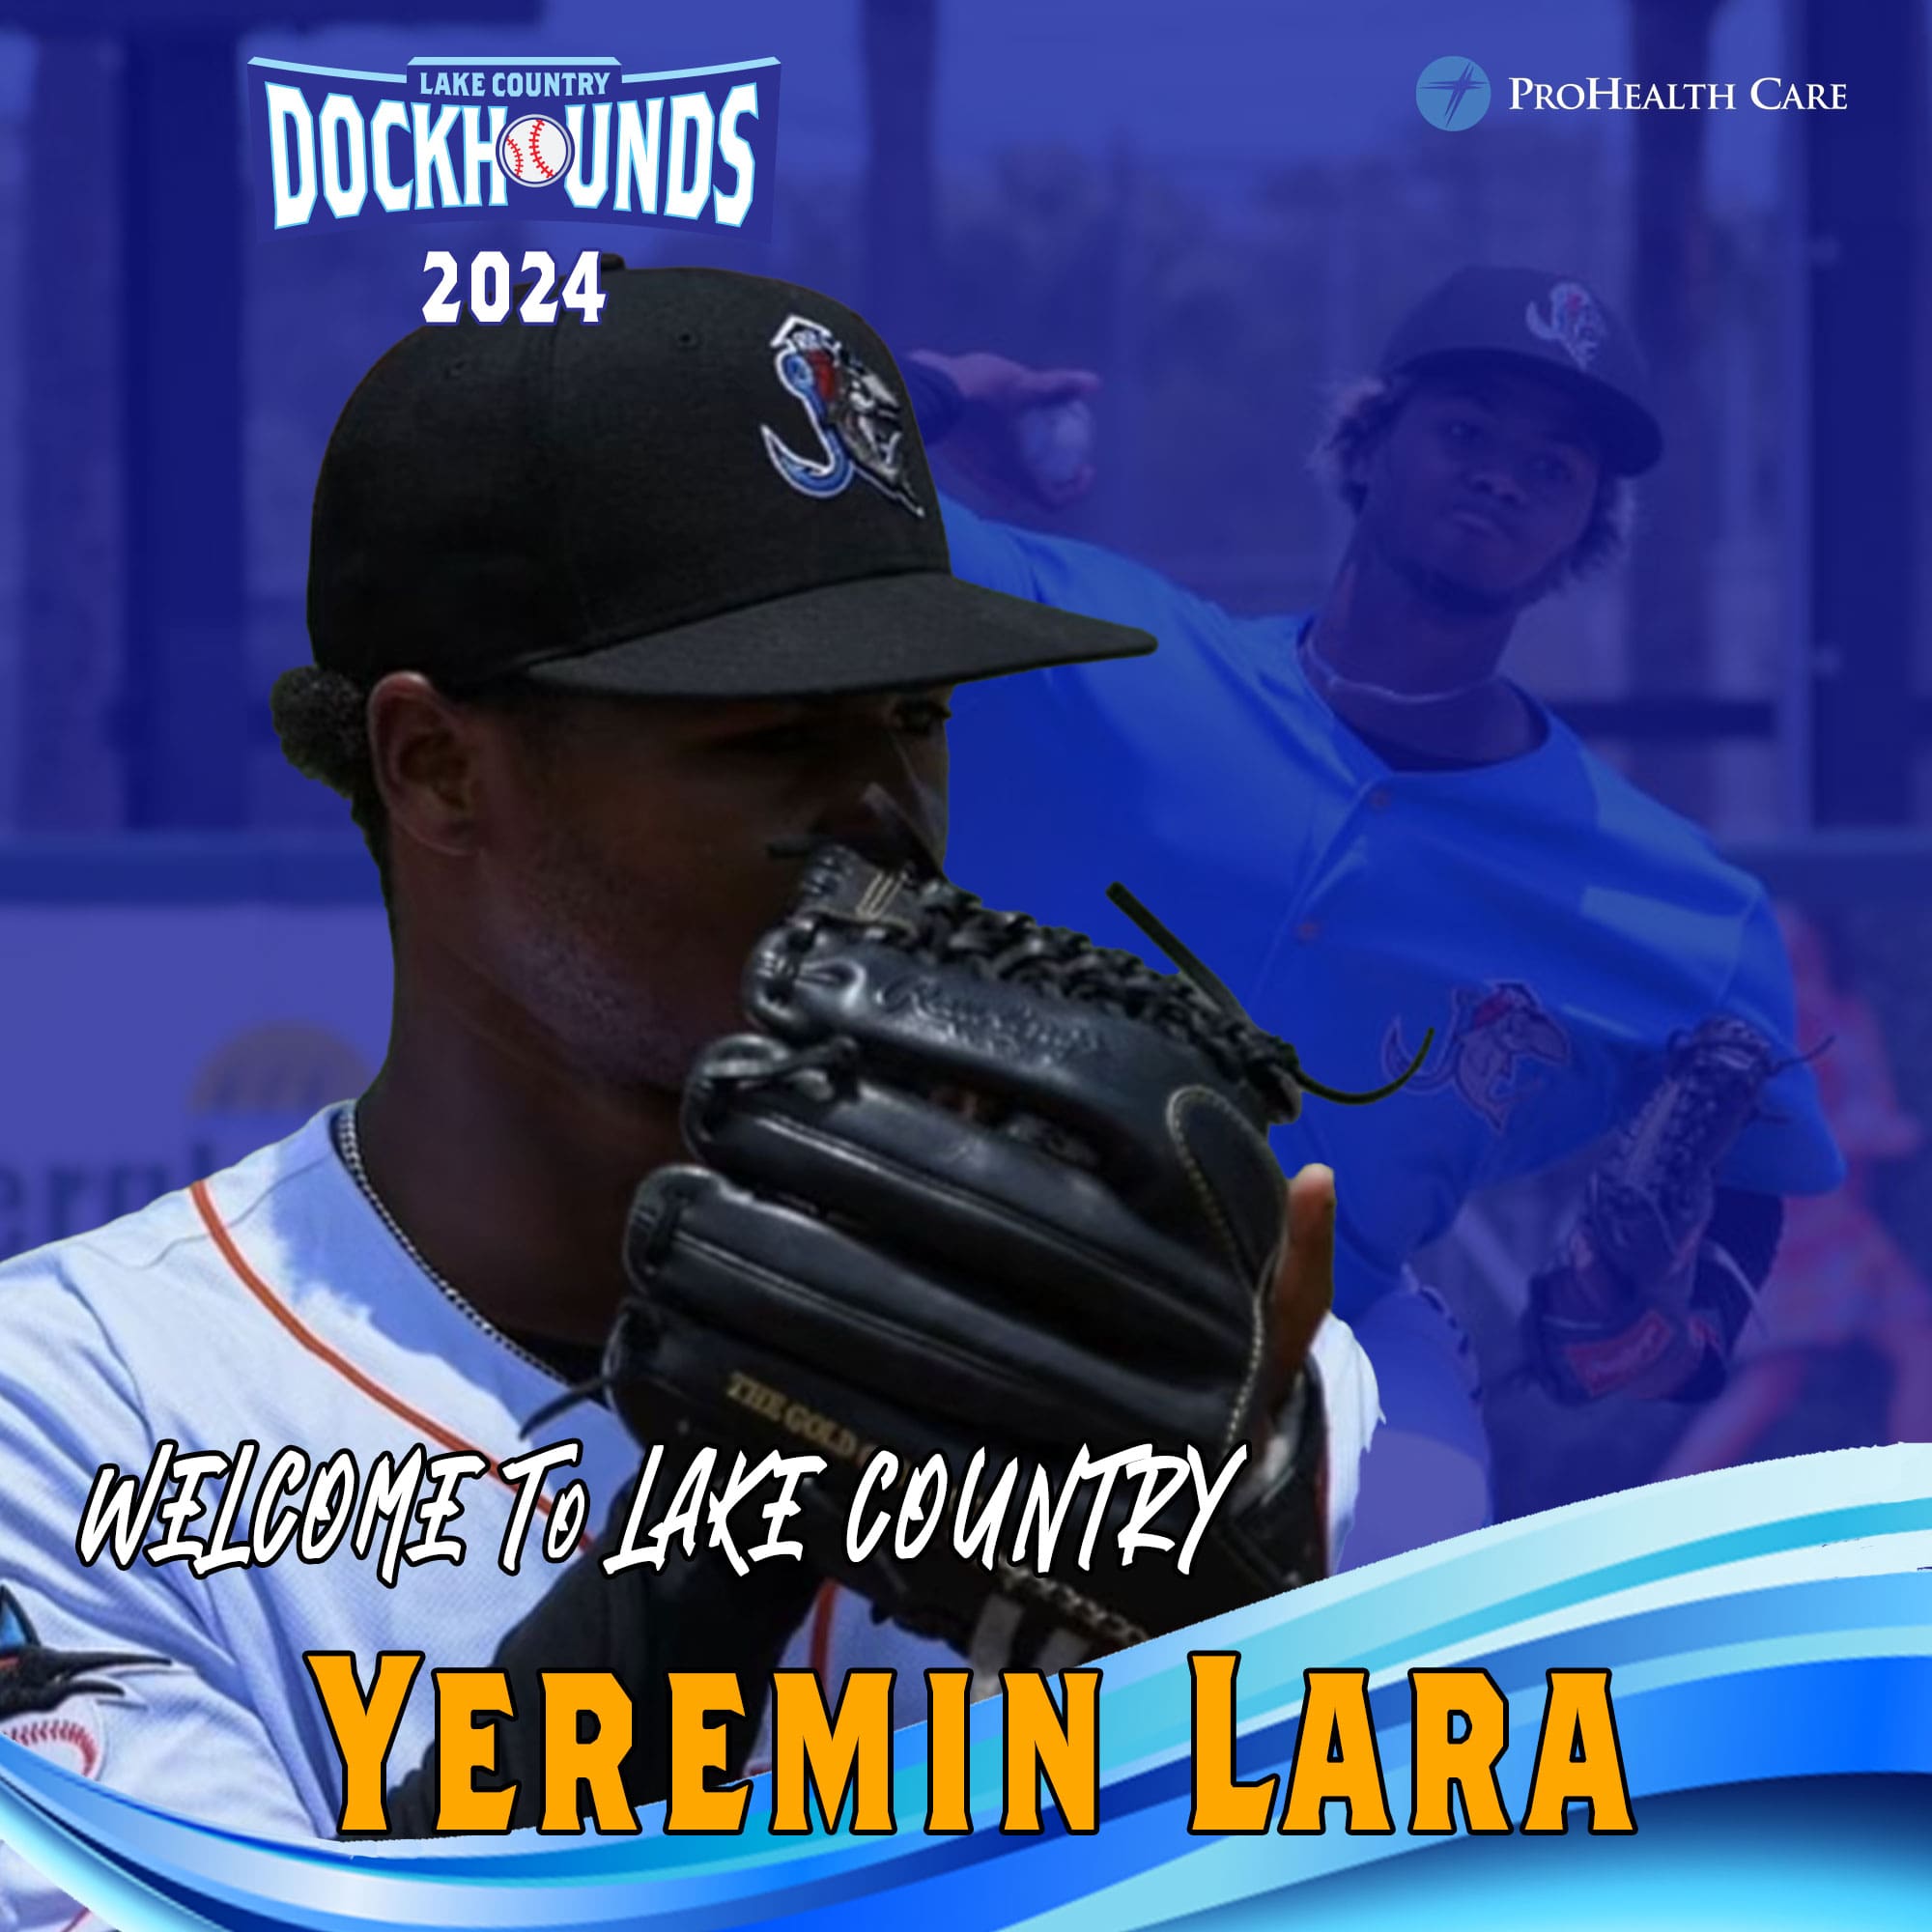 Welcome to Lake Country, Yeremin Lara